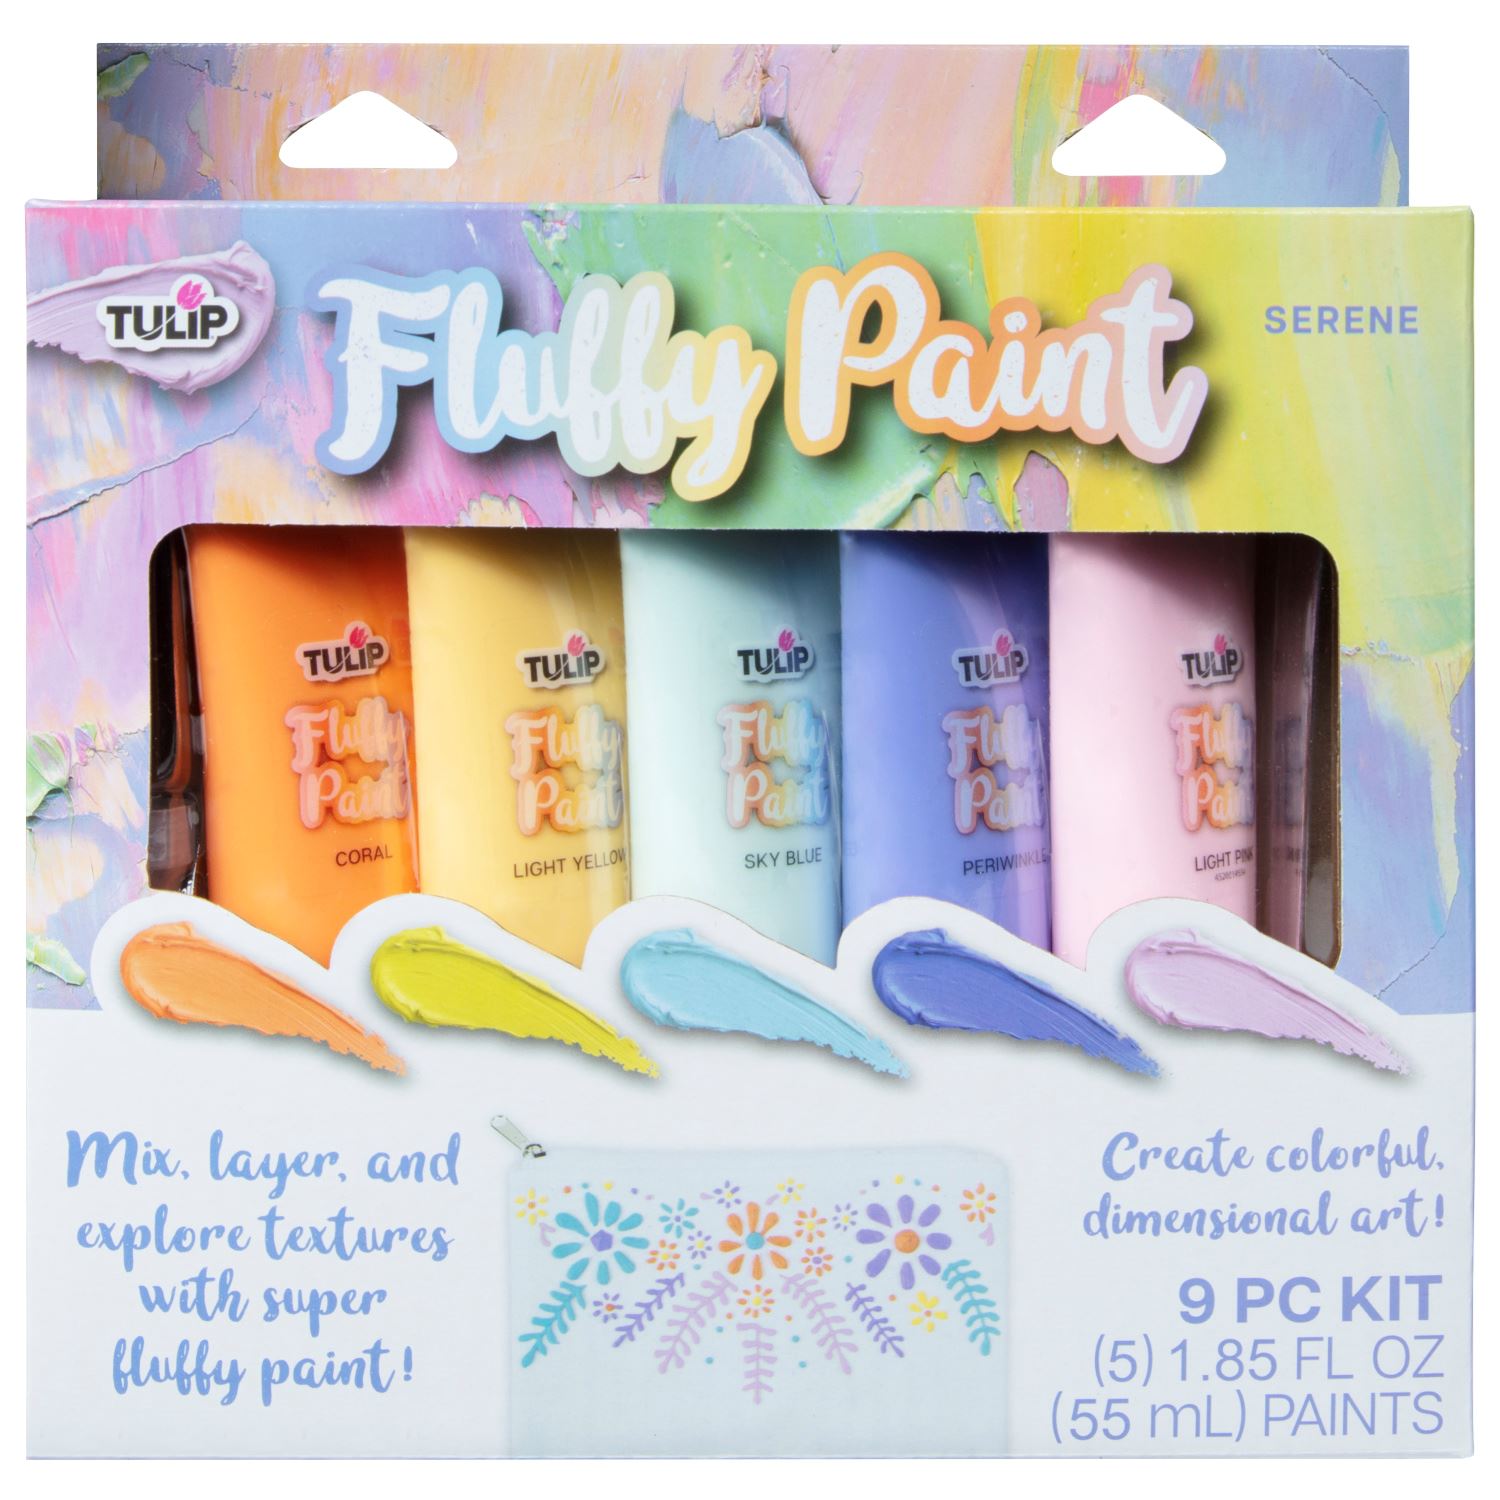 Tulip Fluffy Paint Serene Kit - 1